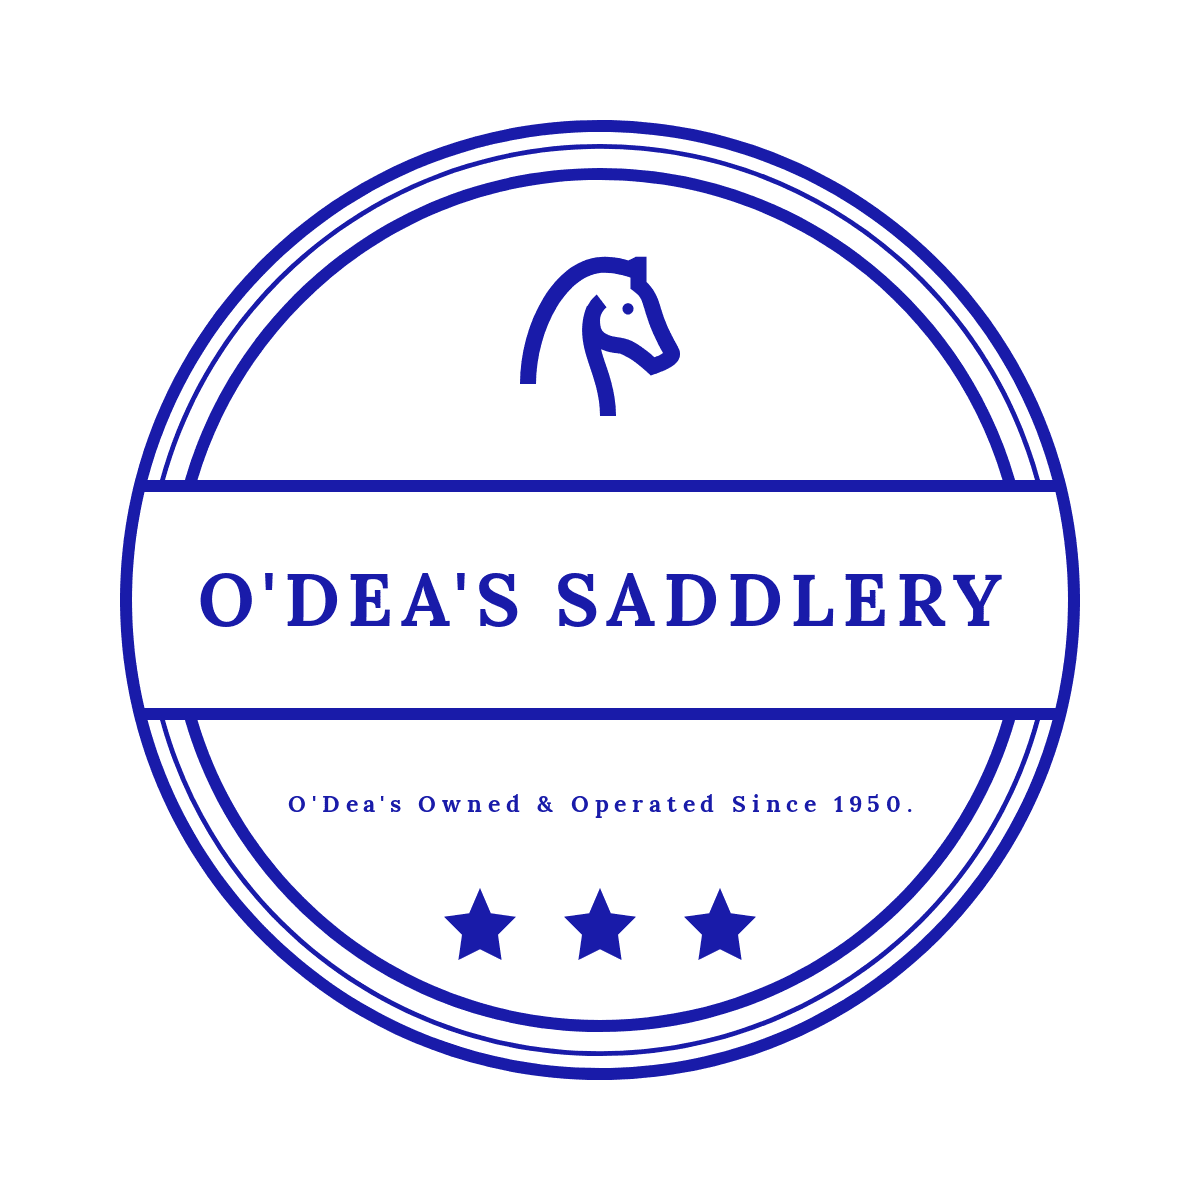 O'Dea's Saddlery